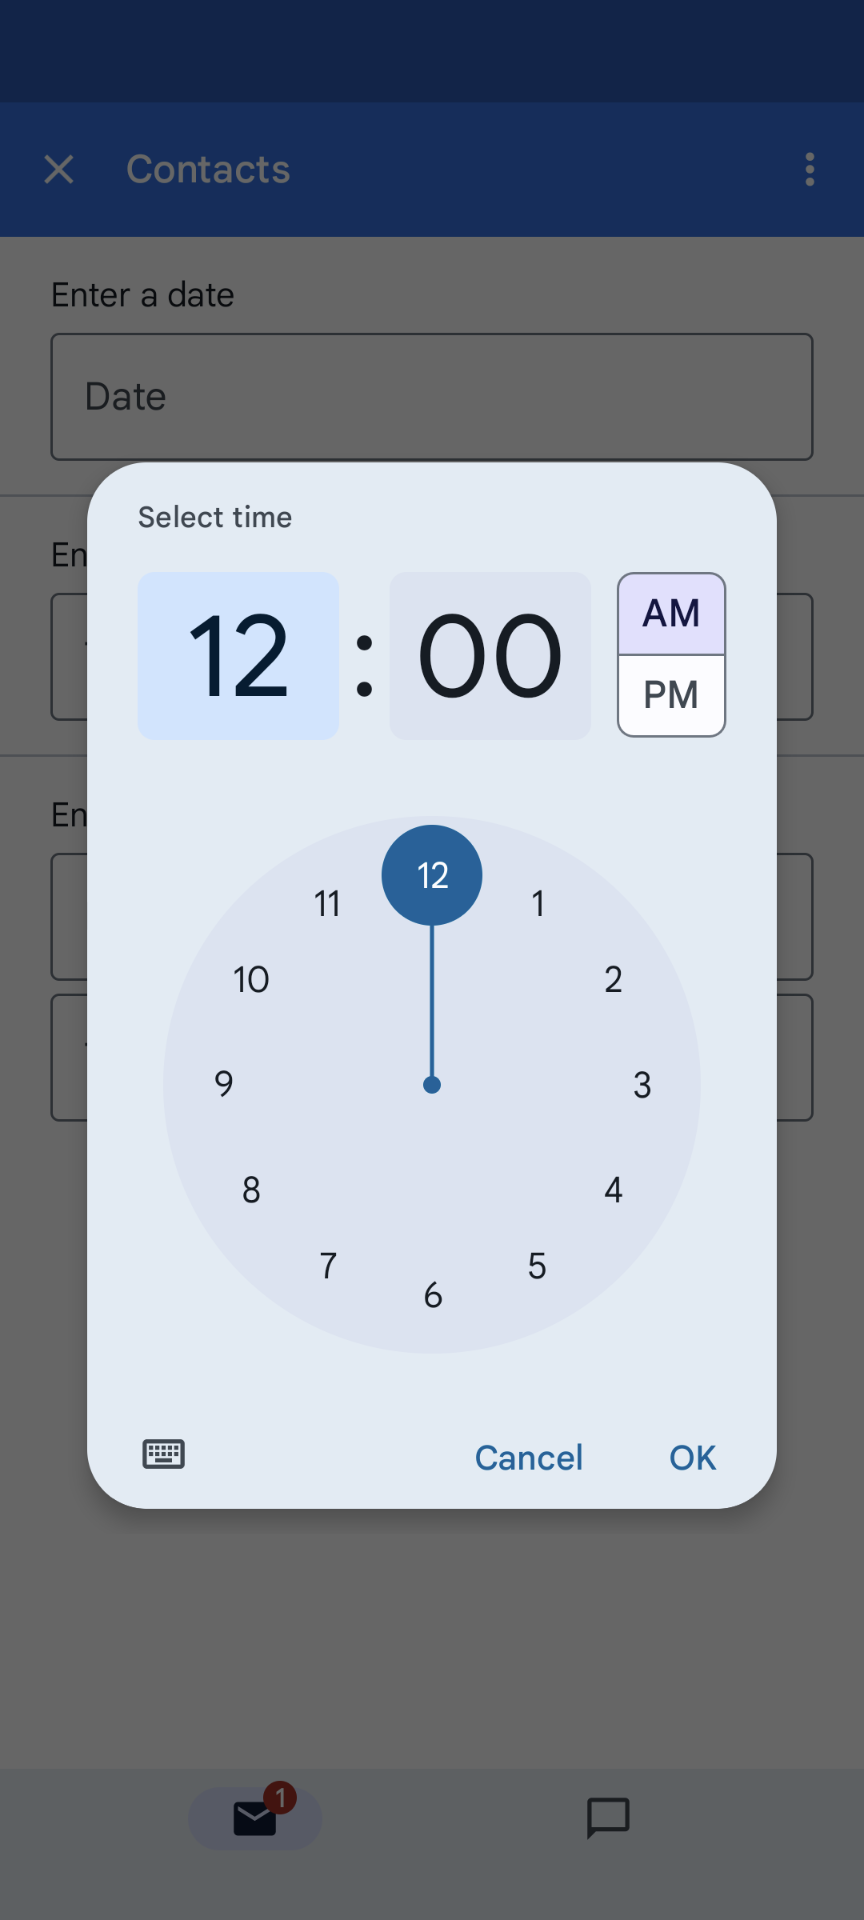 Exemplo de seleção de seletor de horário do dispositivo móvel